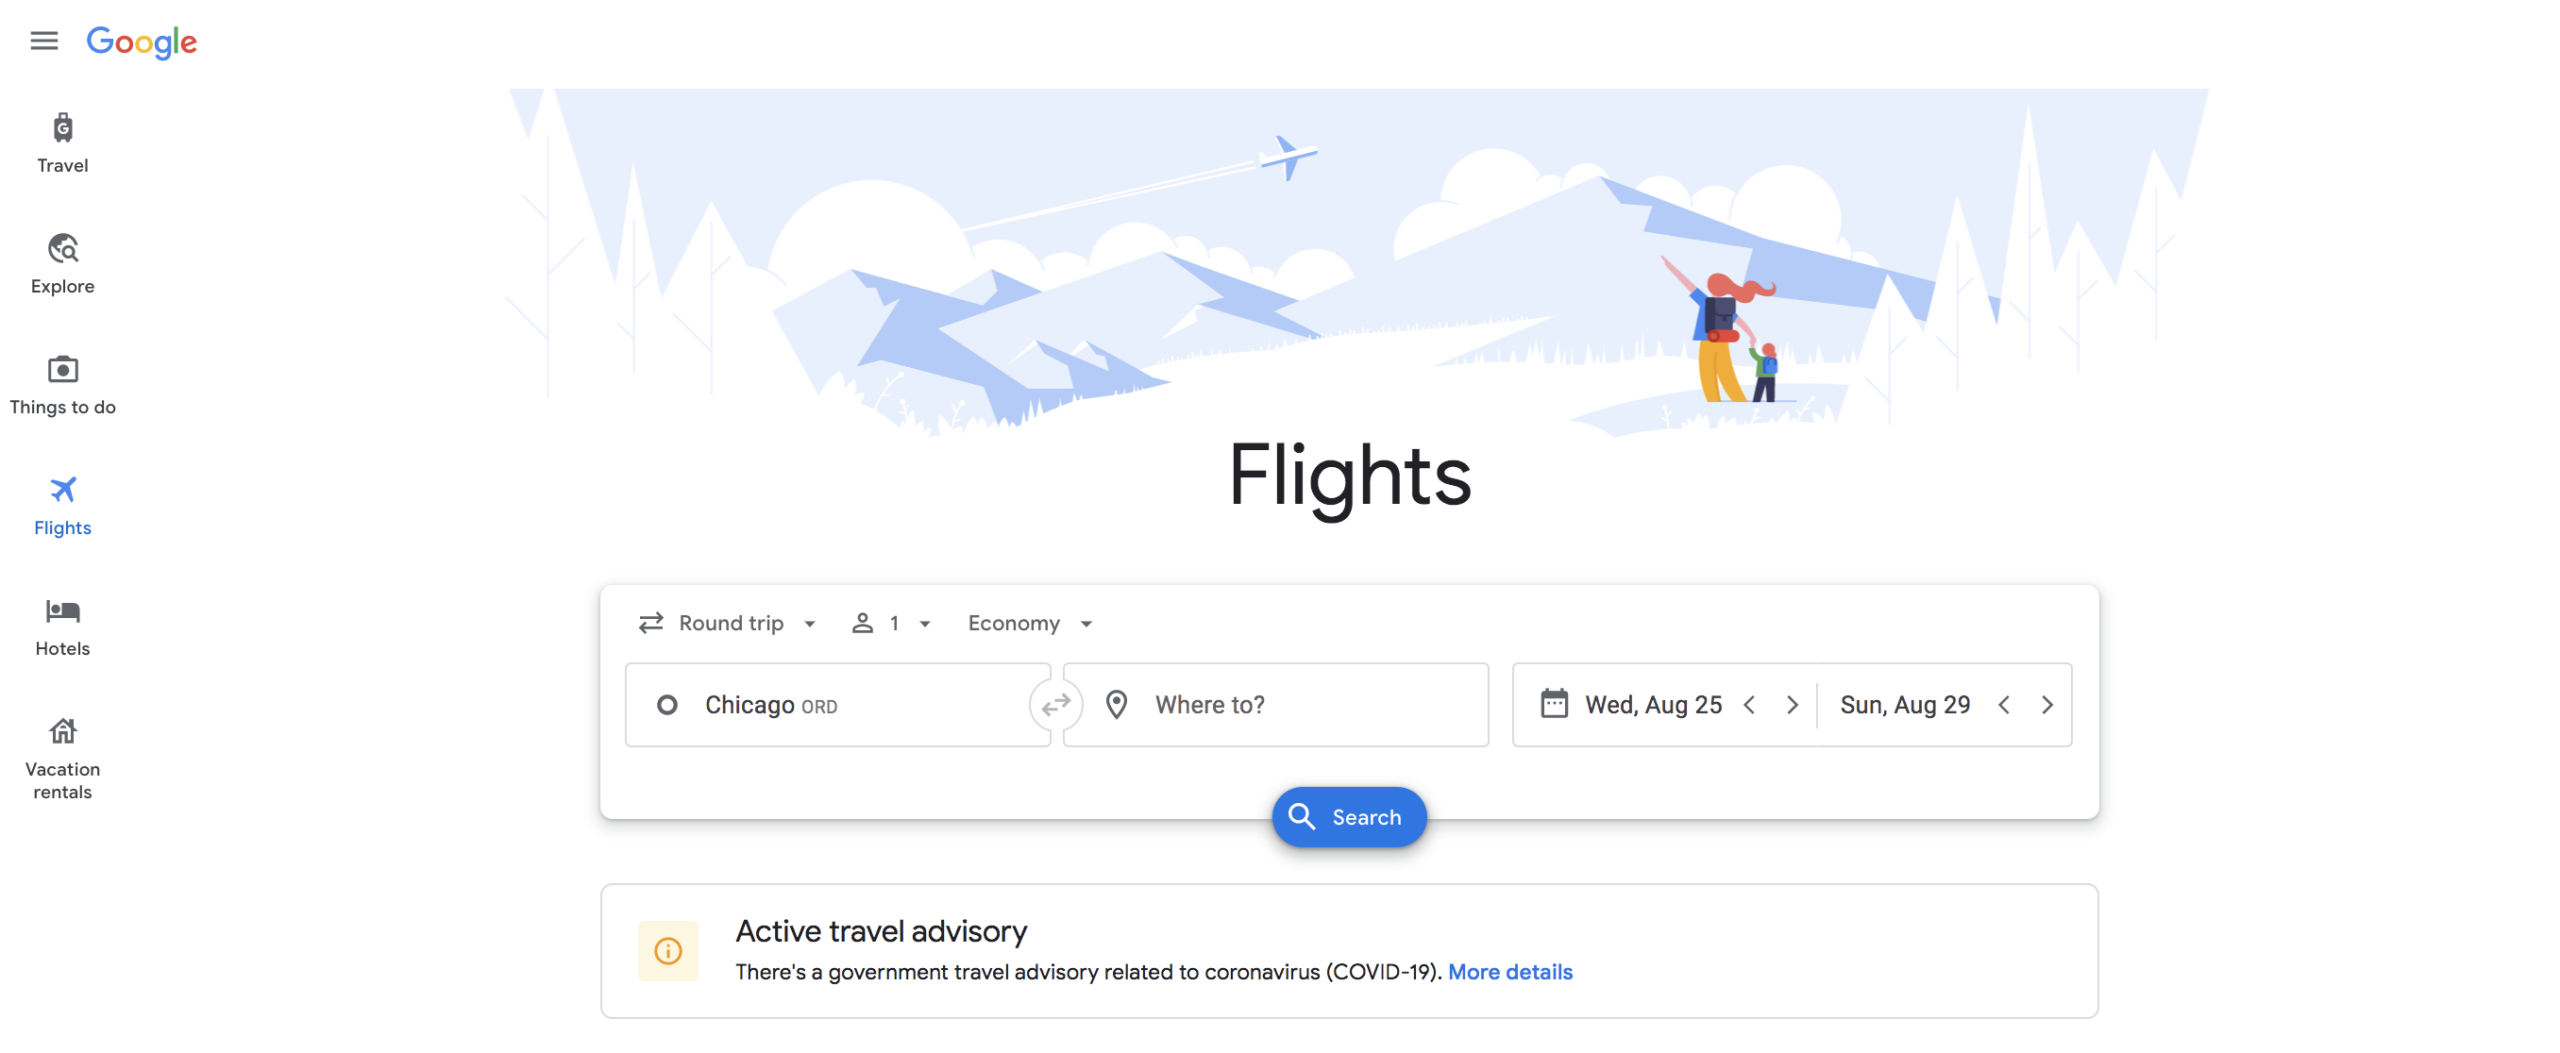 google flights homepage